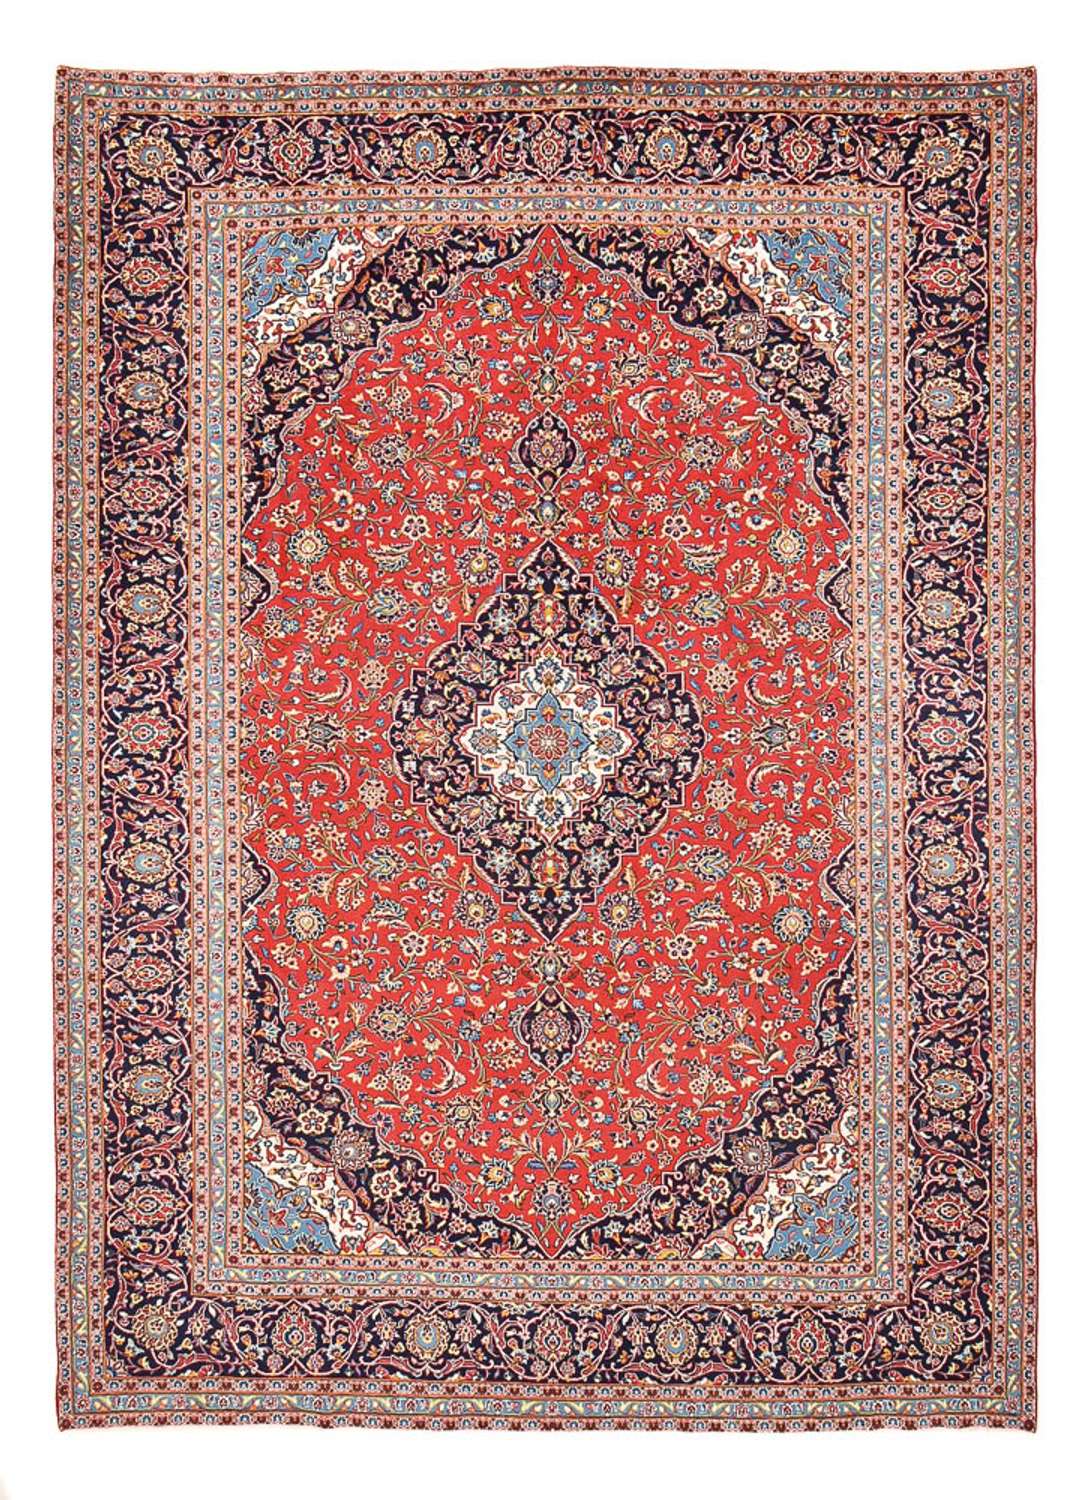 Tapete persa - Keshan - 395 x 286 cm - vermelho